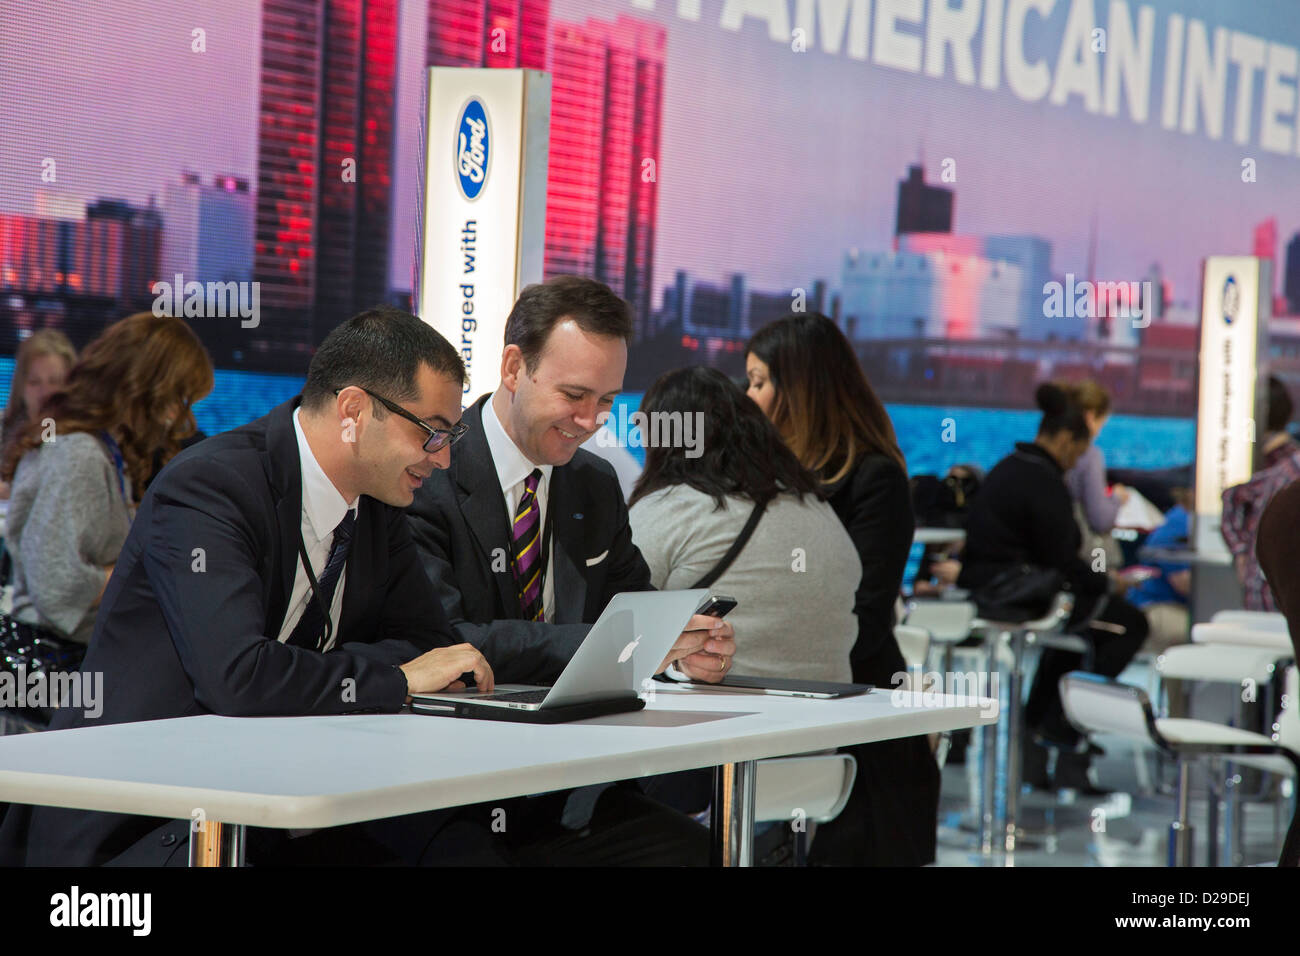 Detroit, Michigan - Journalisten, die mit Laptops und Smartphones auf der North American International Auto Show. Stockfoto